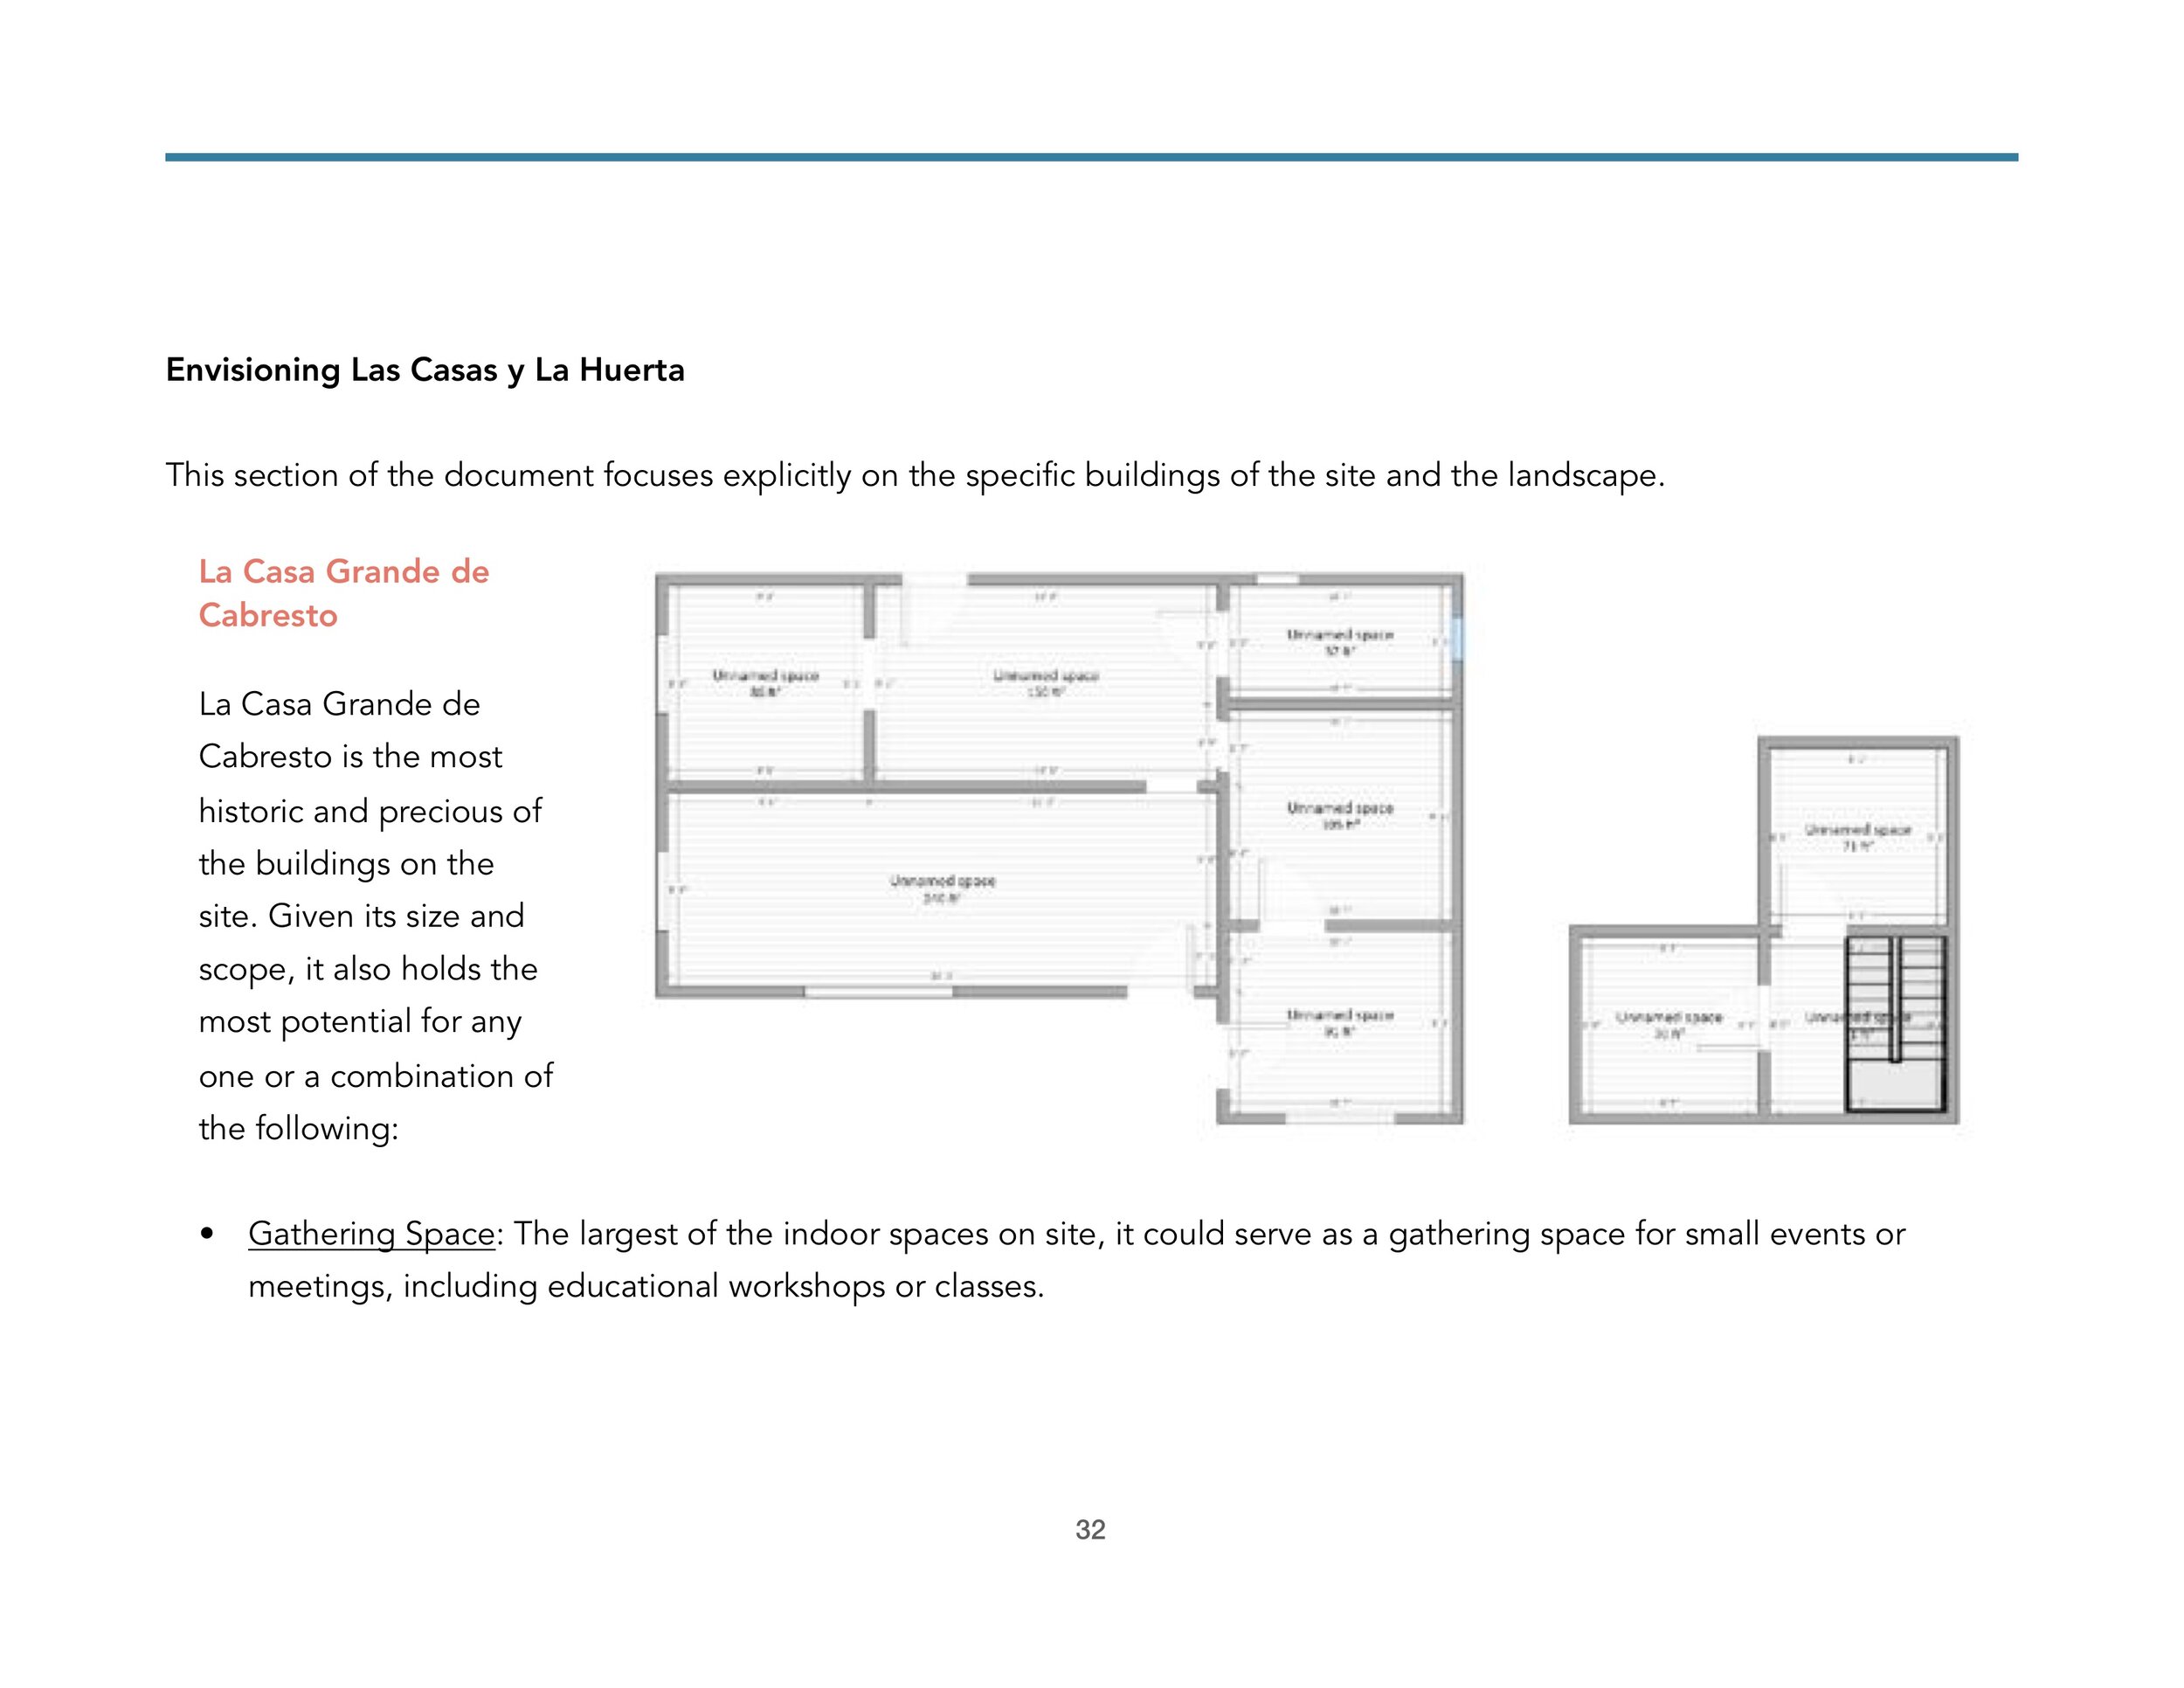 Casas de Cultura Vision web.pdf 32.jpeg